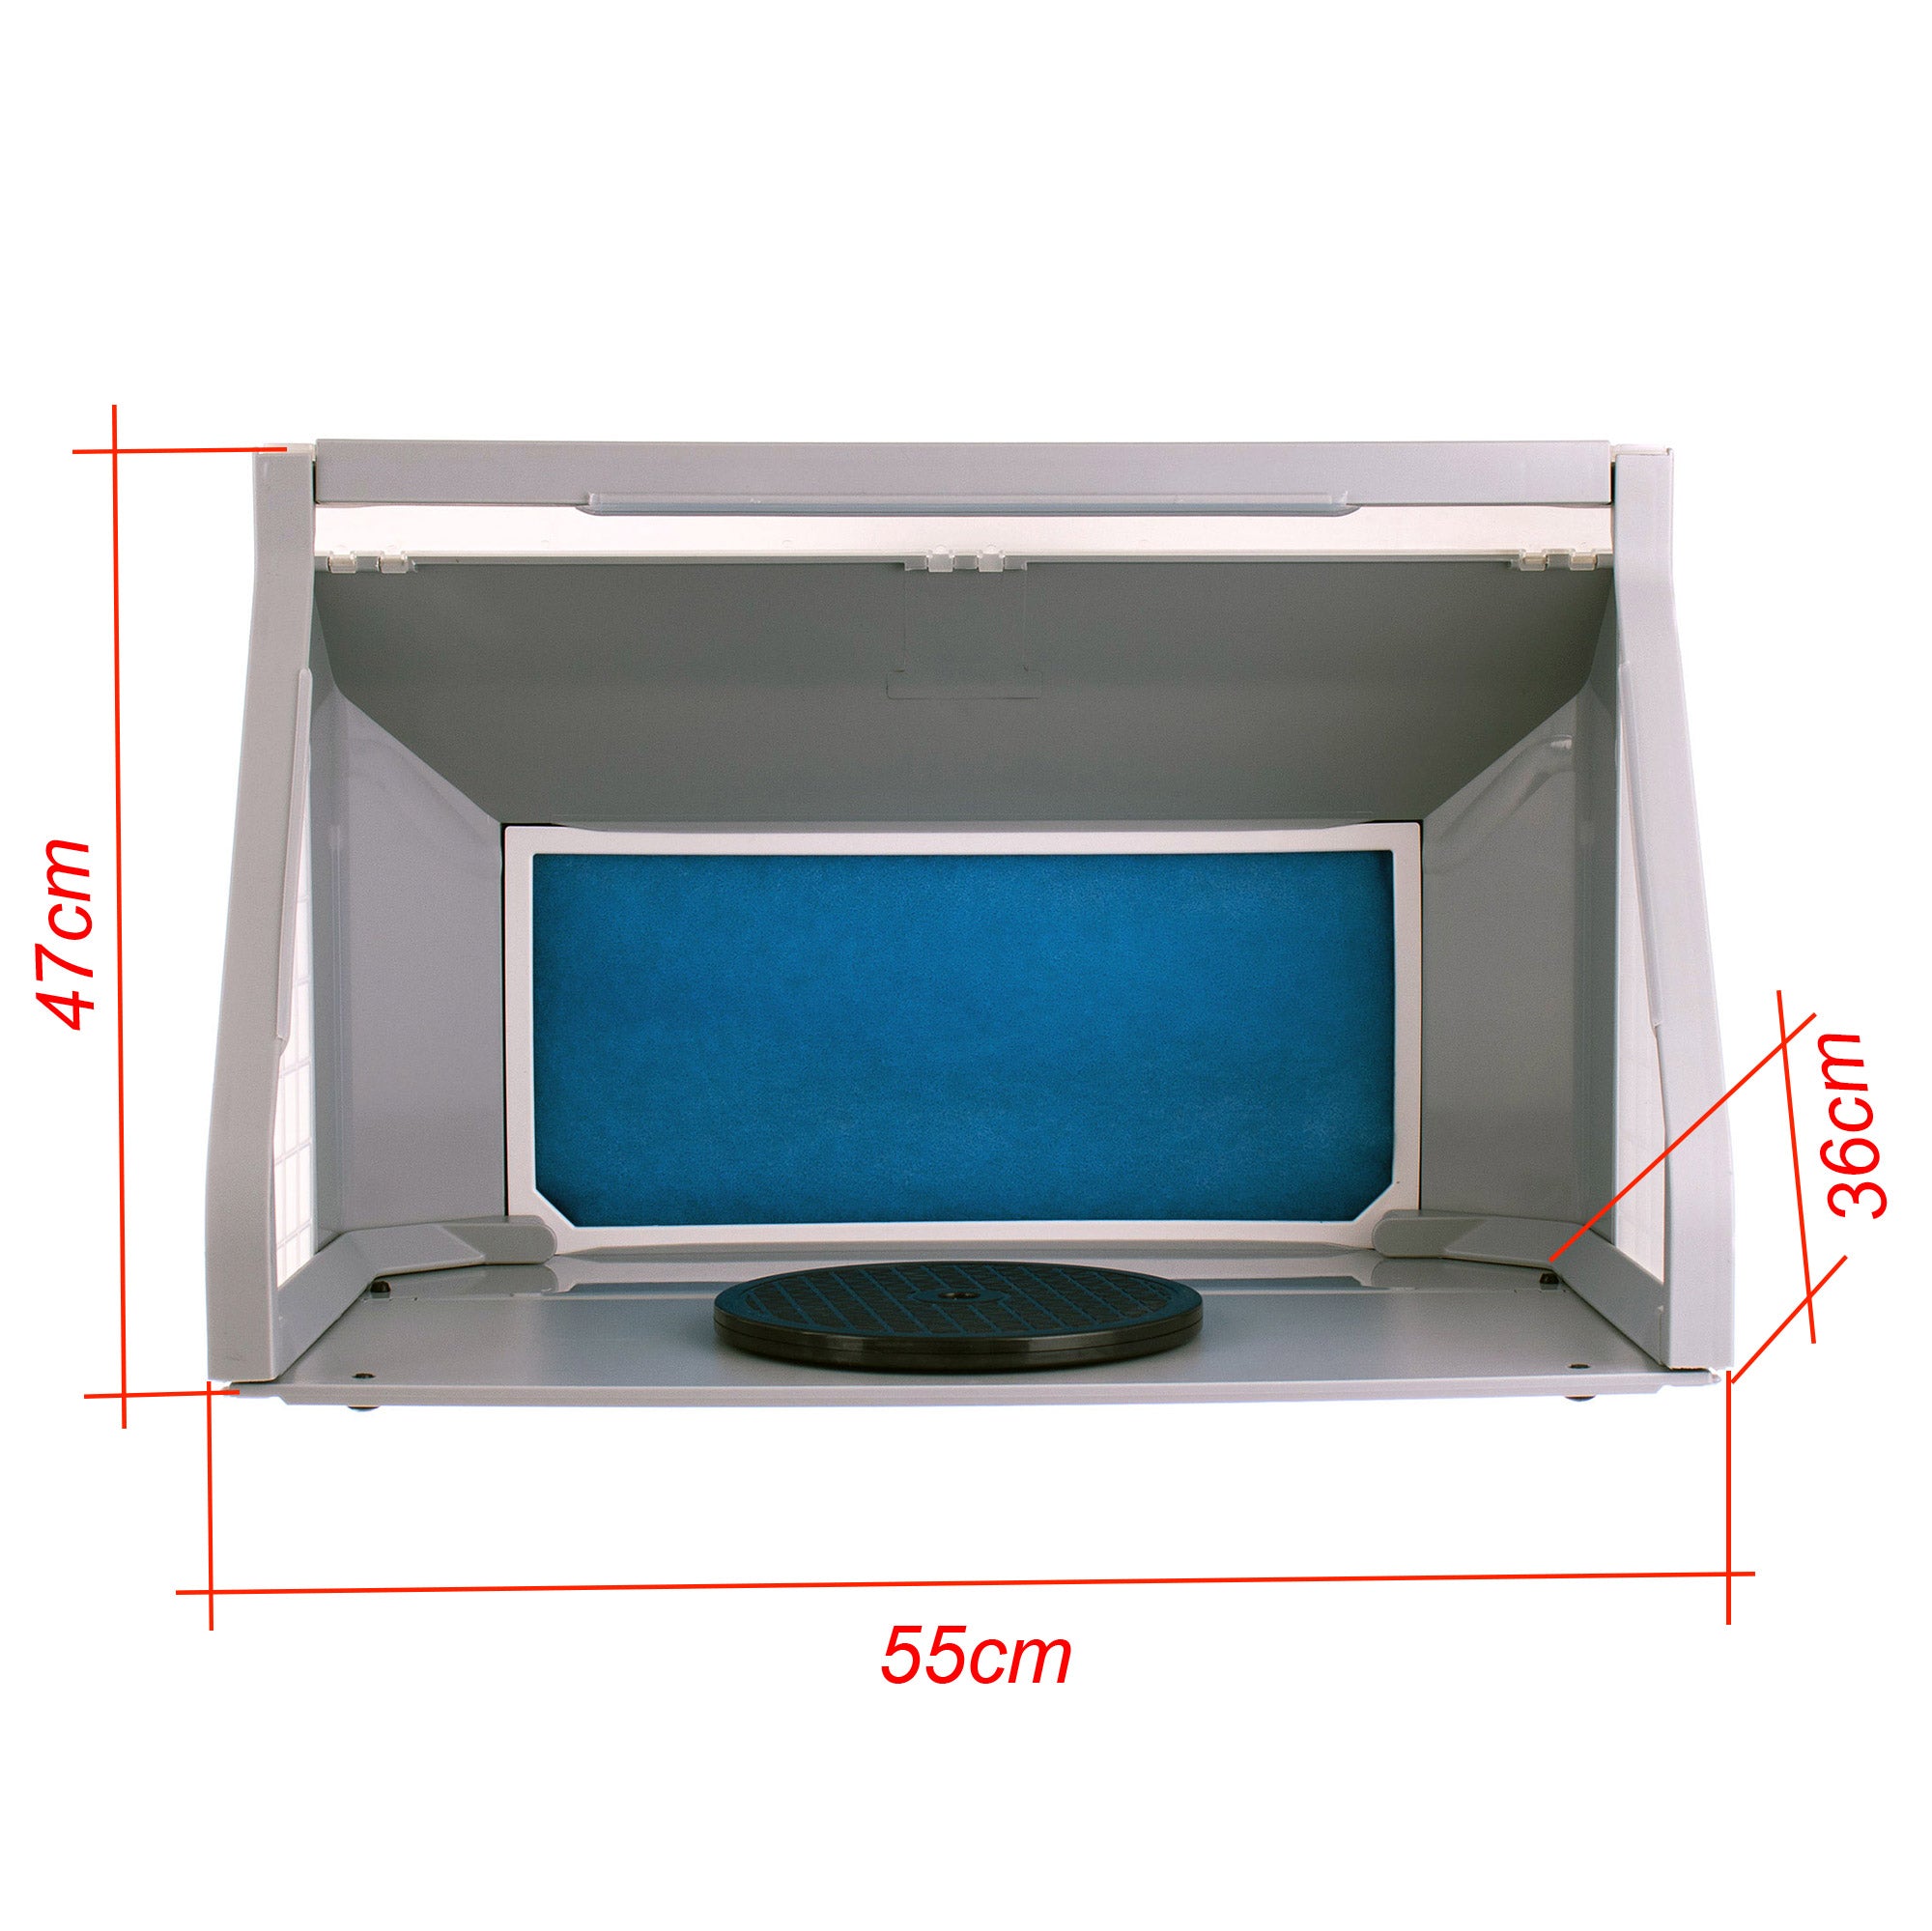 Modelovací kabina - Stříkací box HS-E550LK - s osvětlením LED, s dvojitým ventilátorem a rotačním stojanem - pro airbrush modeláře